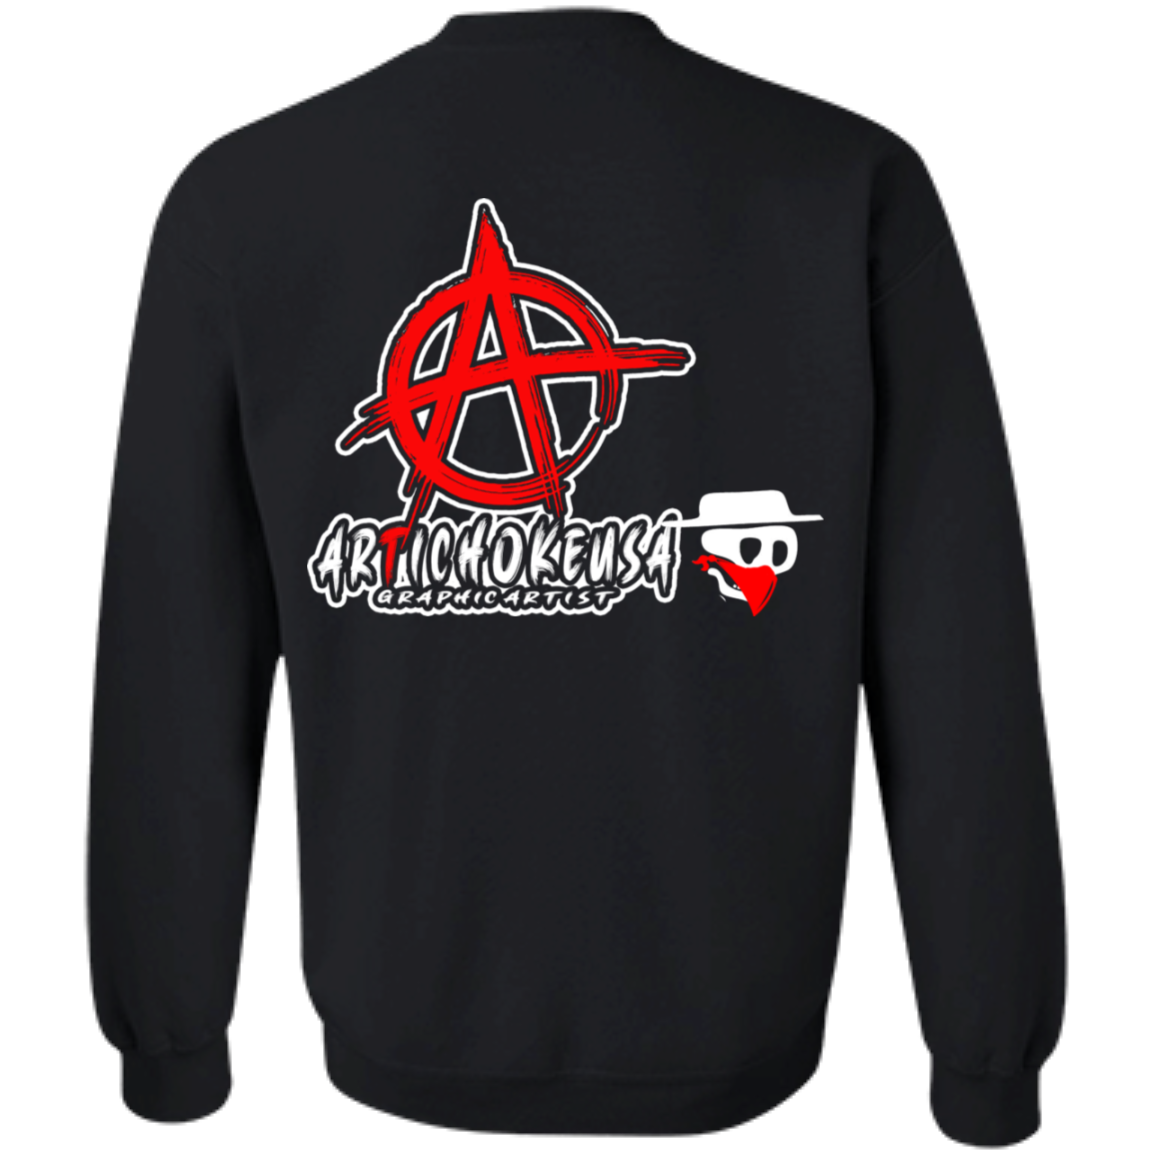 ArtichokeUSA Custom Design. Social Distancing. Social Distortion Parody. Crewneck Pullover Sweatshirt